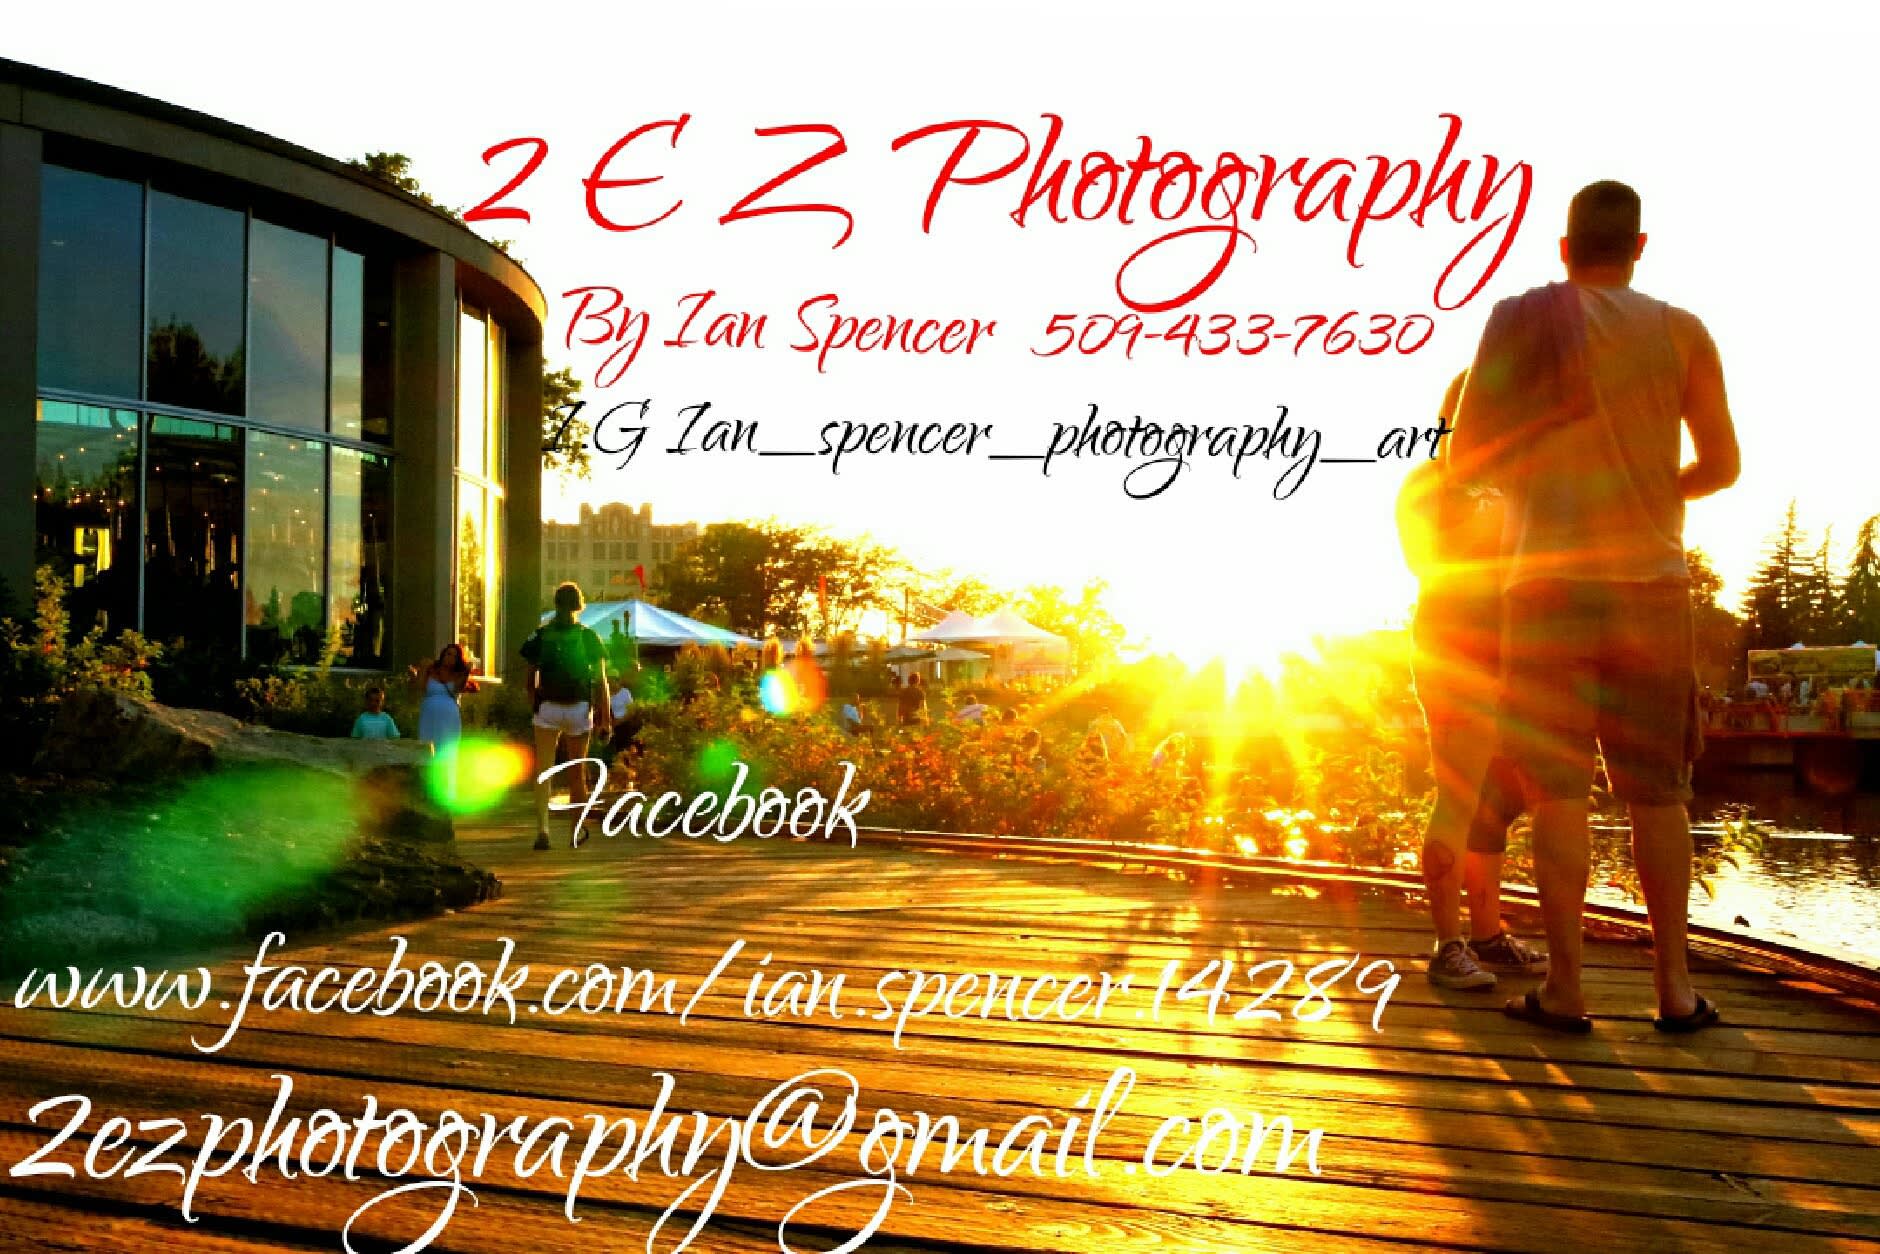 2 E Z Photography